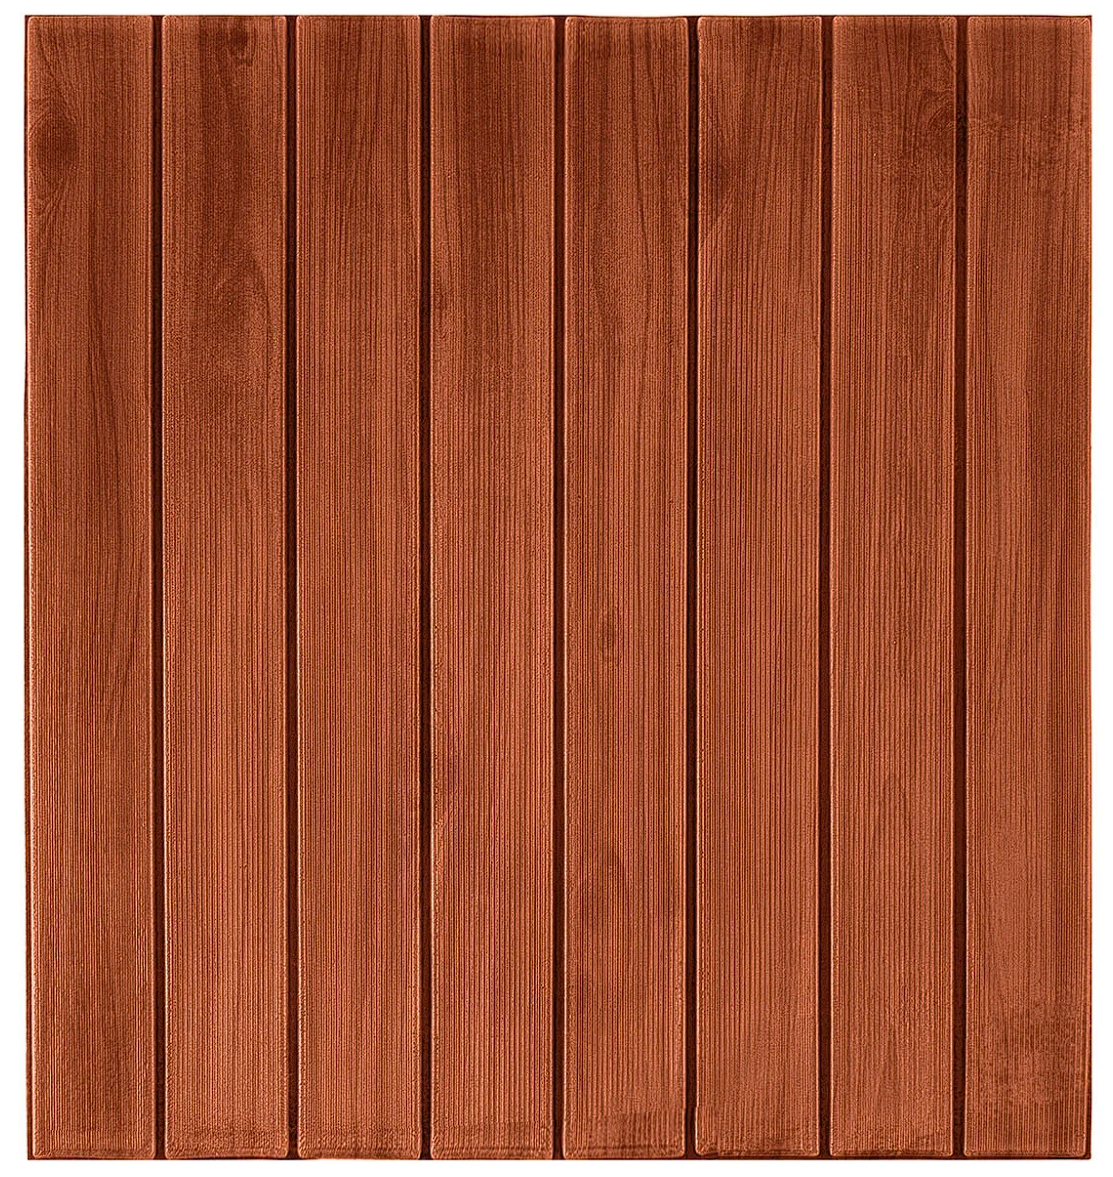 Самоклеящаяся 3D панель для стен LAKO DECOR, коллекция Дерево, цвет Кофейный микс, 70x60см, толщина 6мм